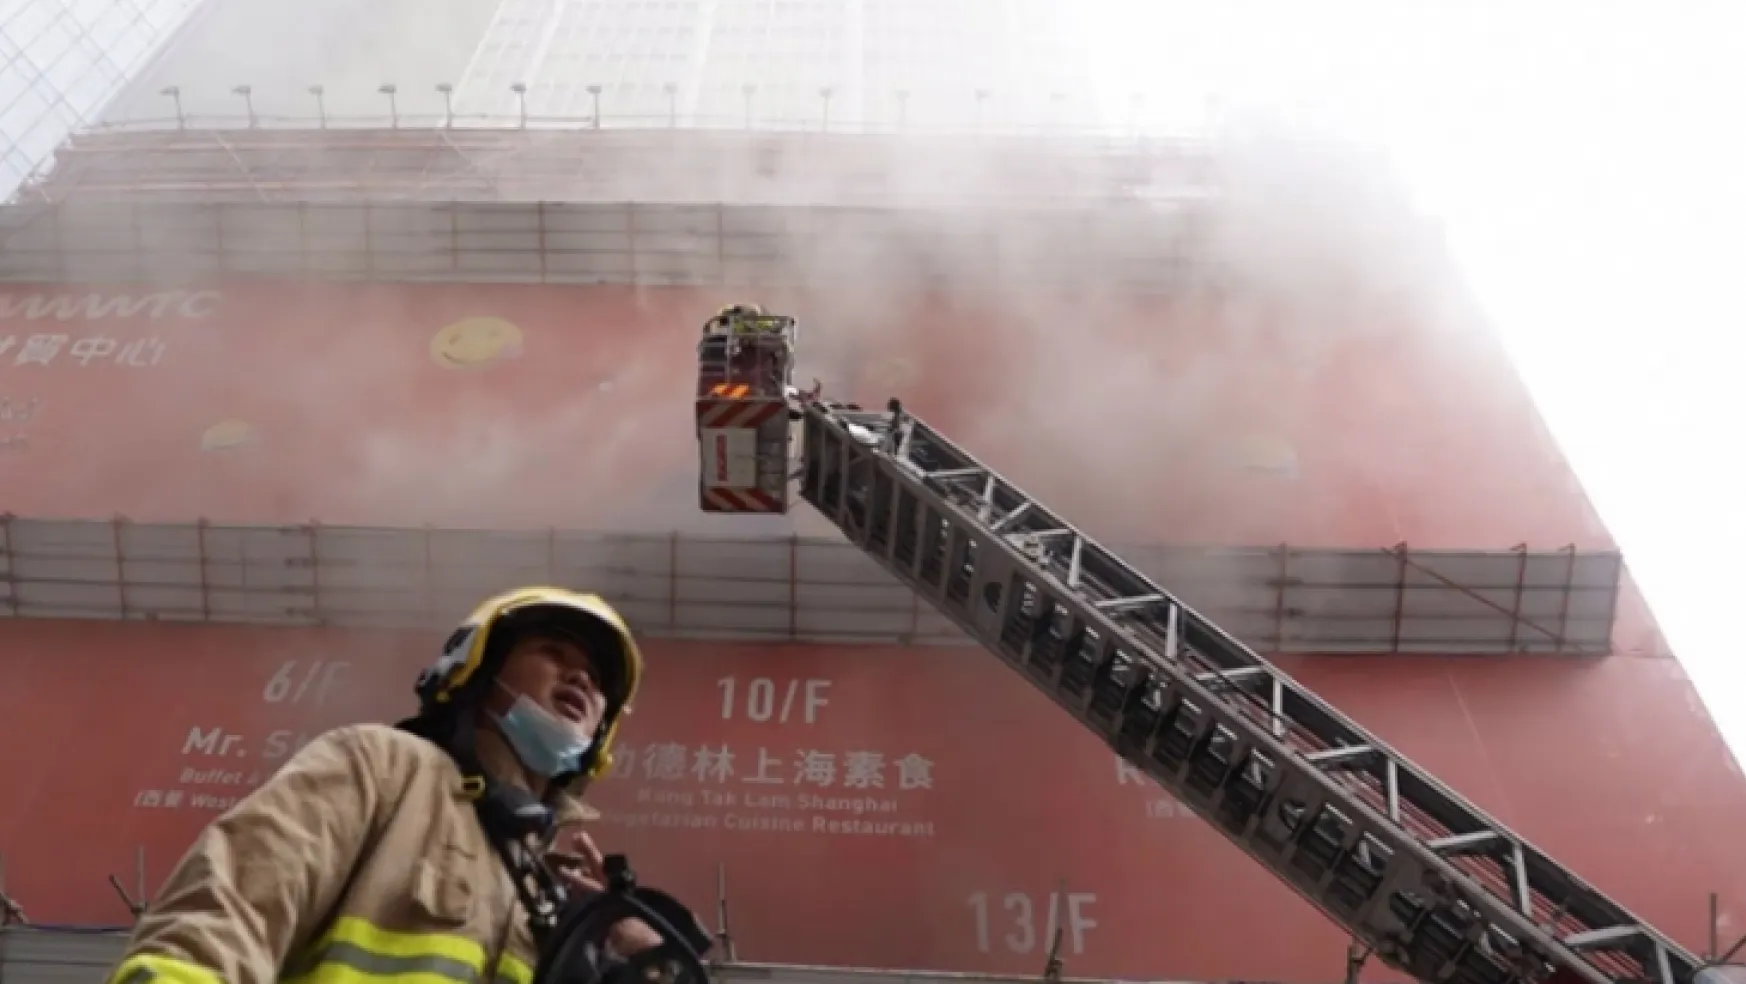 Hong Kong'da Dünya Ticaret Merkezi'nde büyük yangın